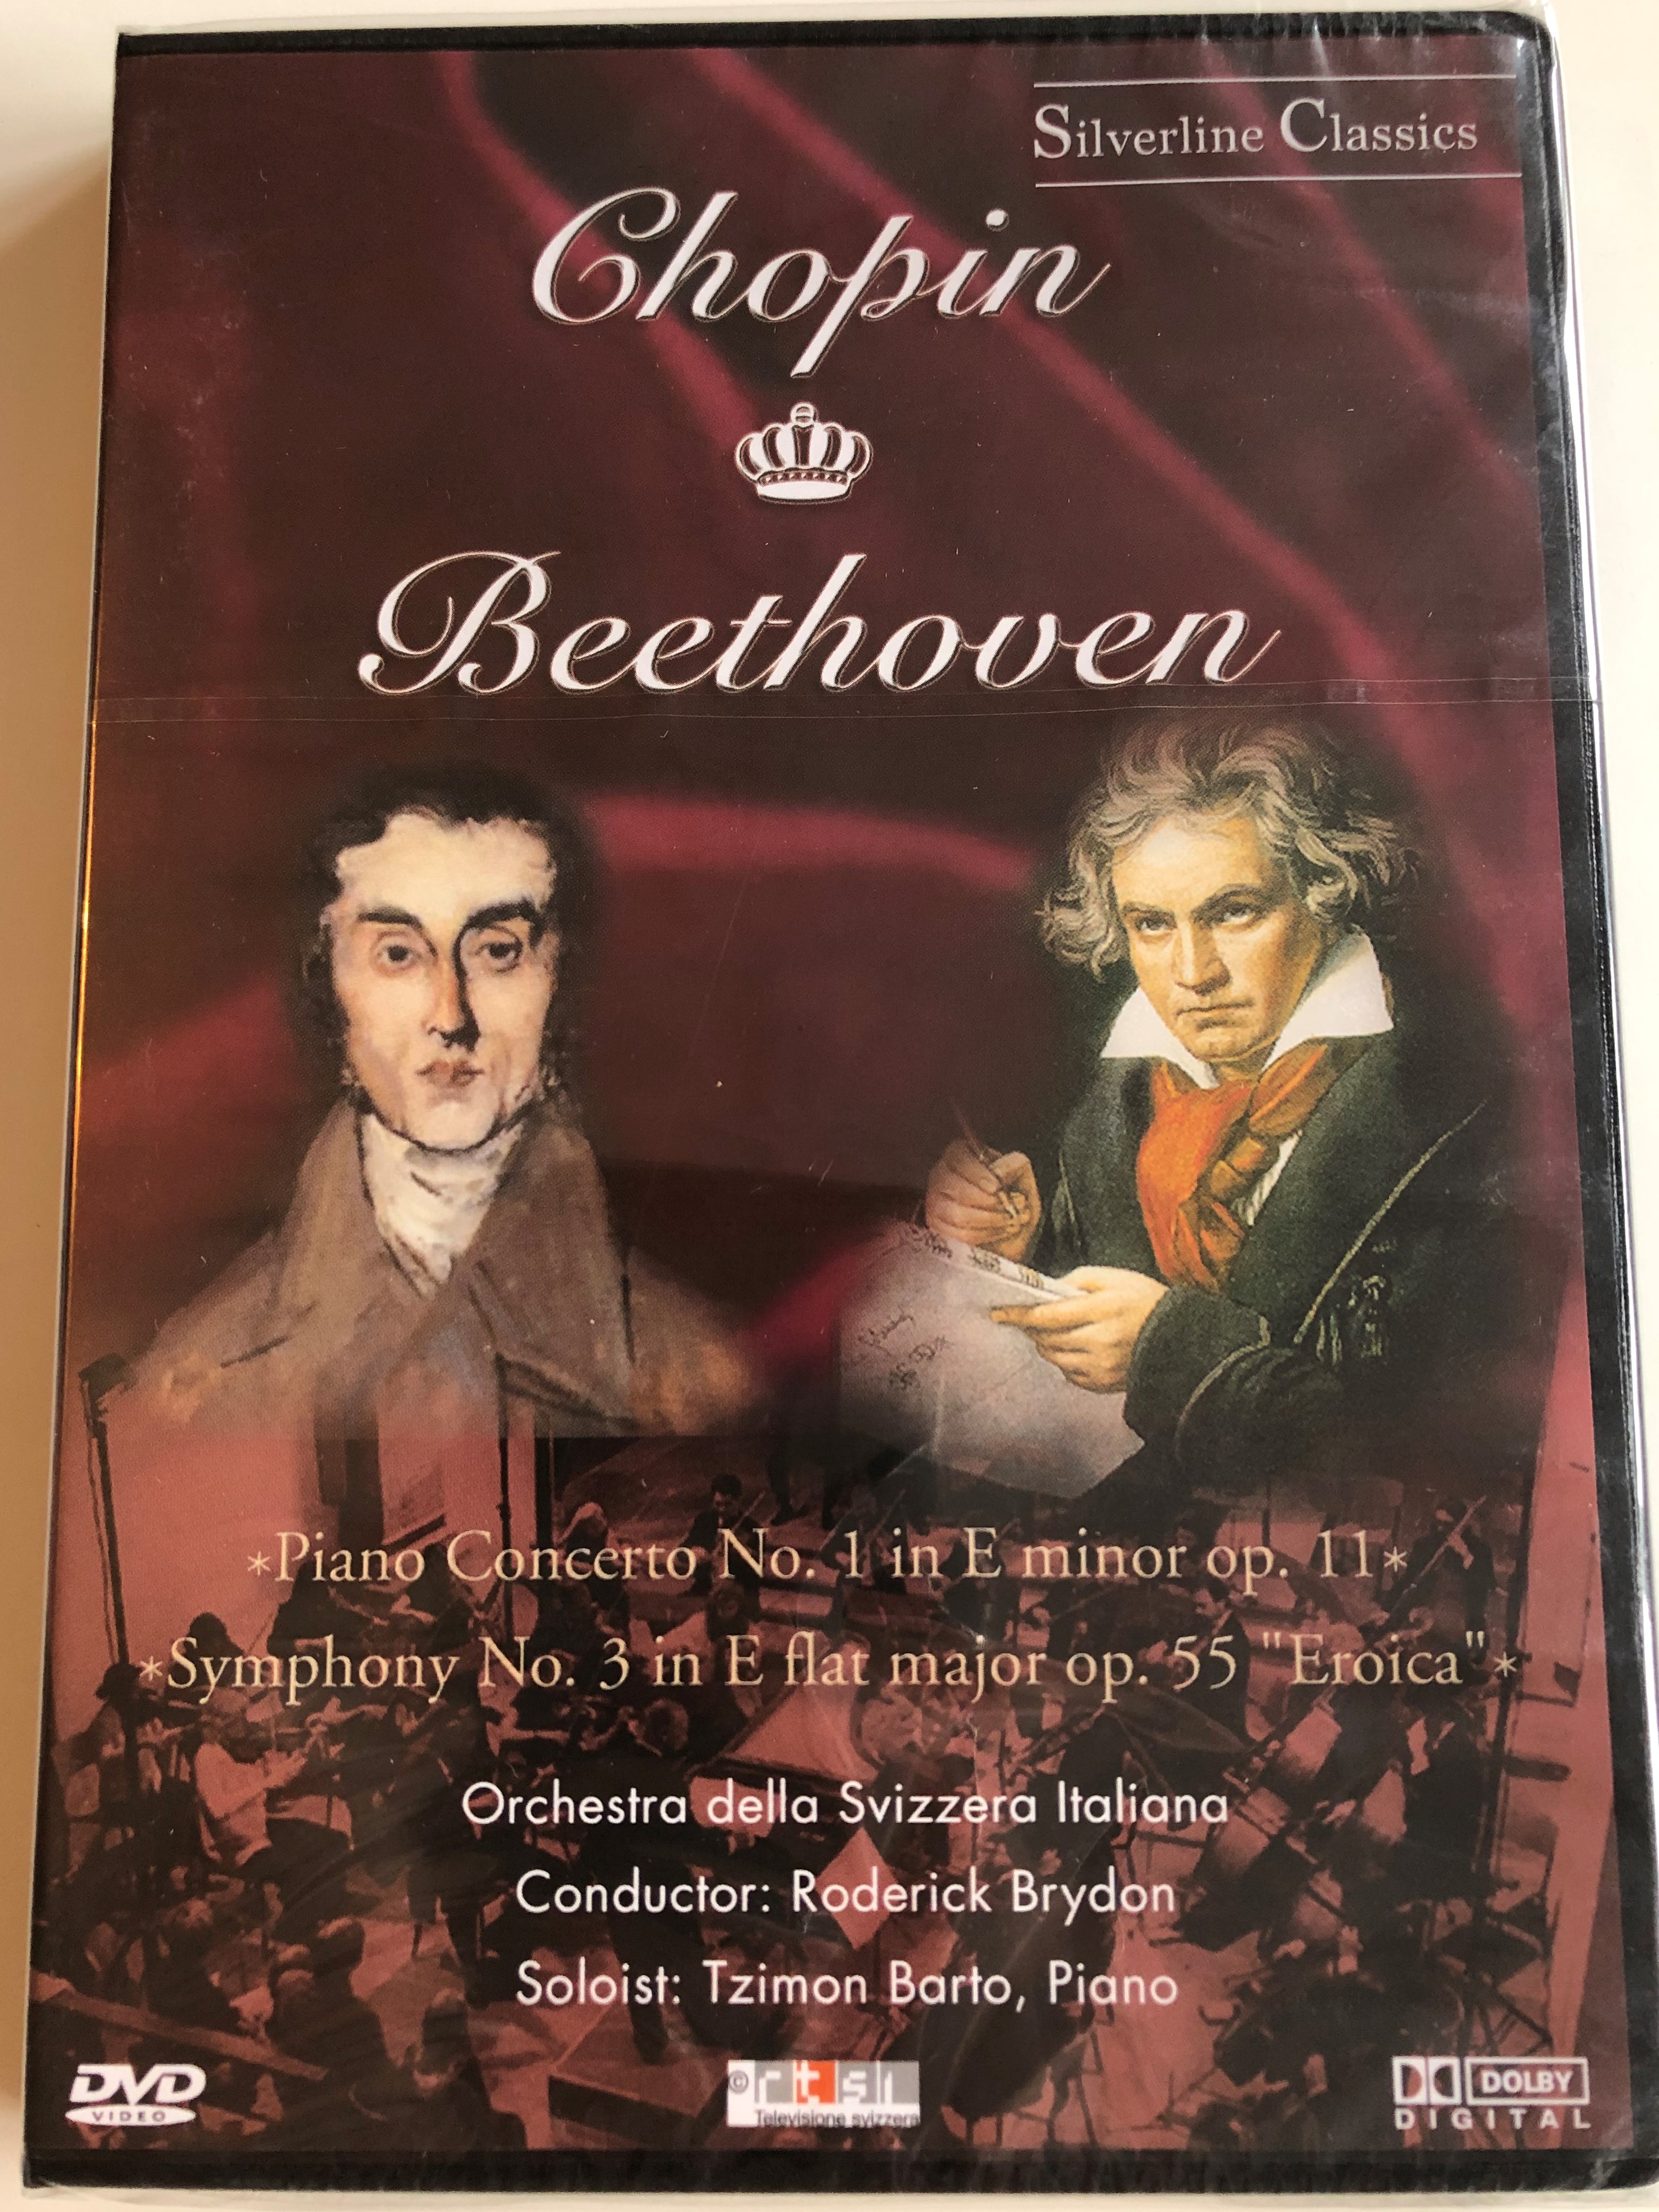 chopin-beethoven-piano-concerto-no.-1-in-e-minor-op.-11-symphony-no.-3-in-e-flat-major-op.-55-eroica-orchestra-della-svizzera-italiana-roderick-brydon-tzimon-barto-cascade-medien-dvd-1988-1-.jpg